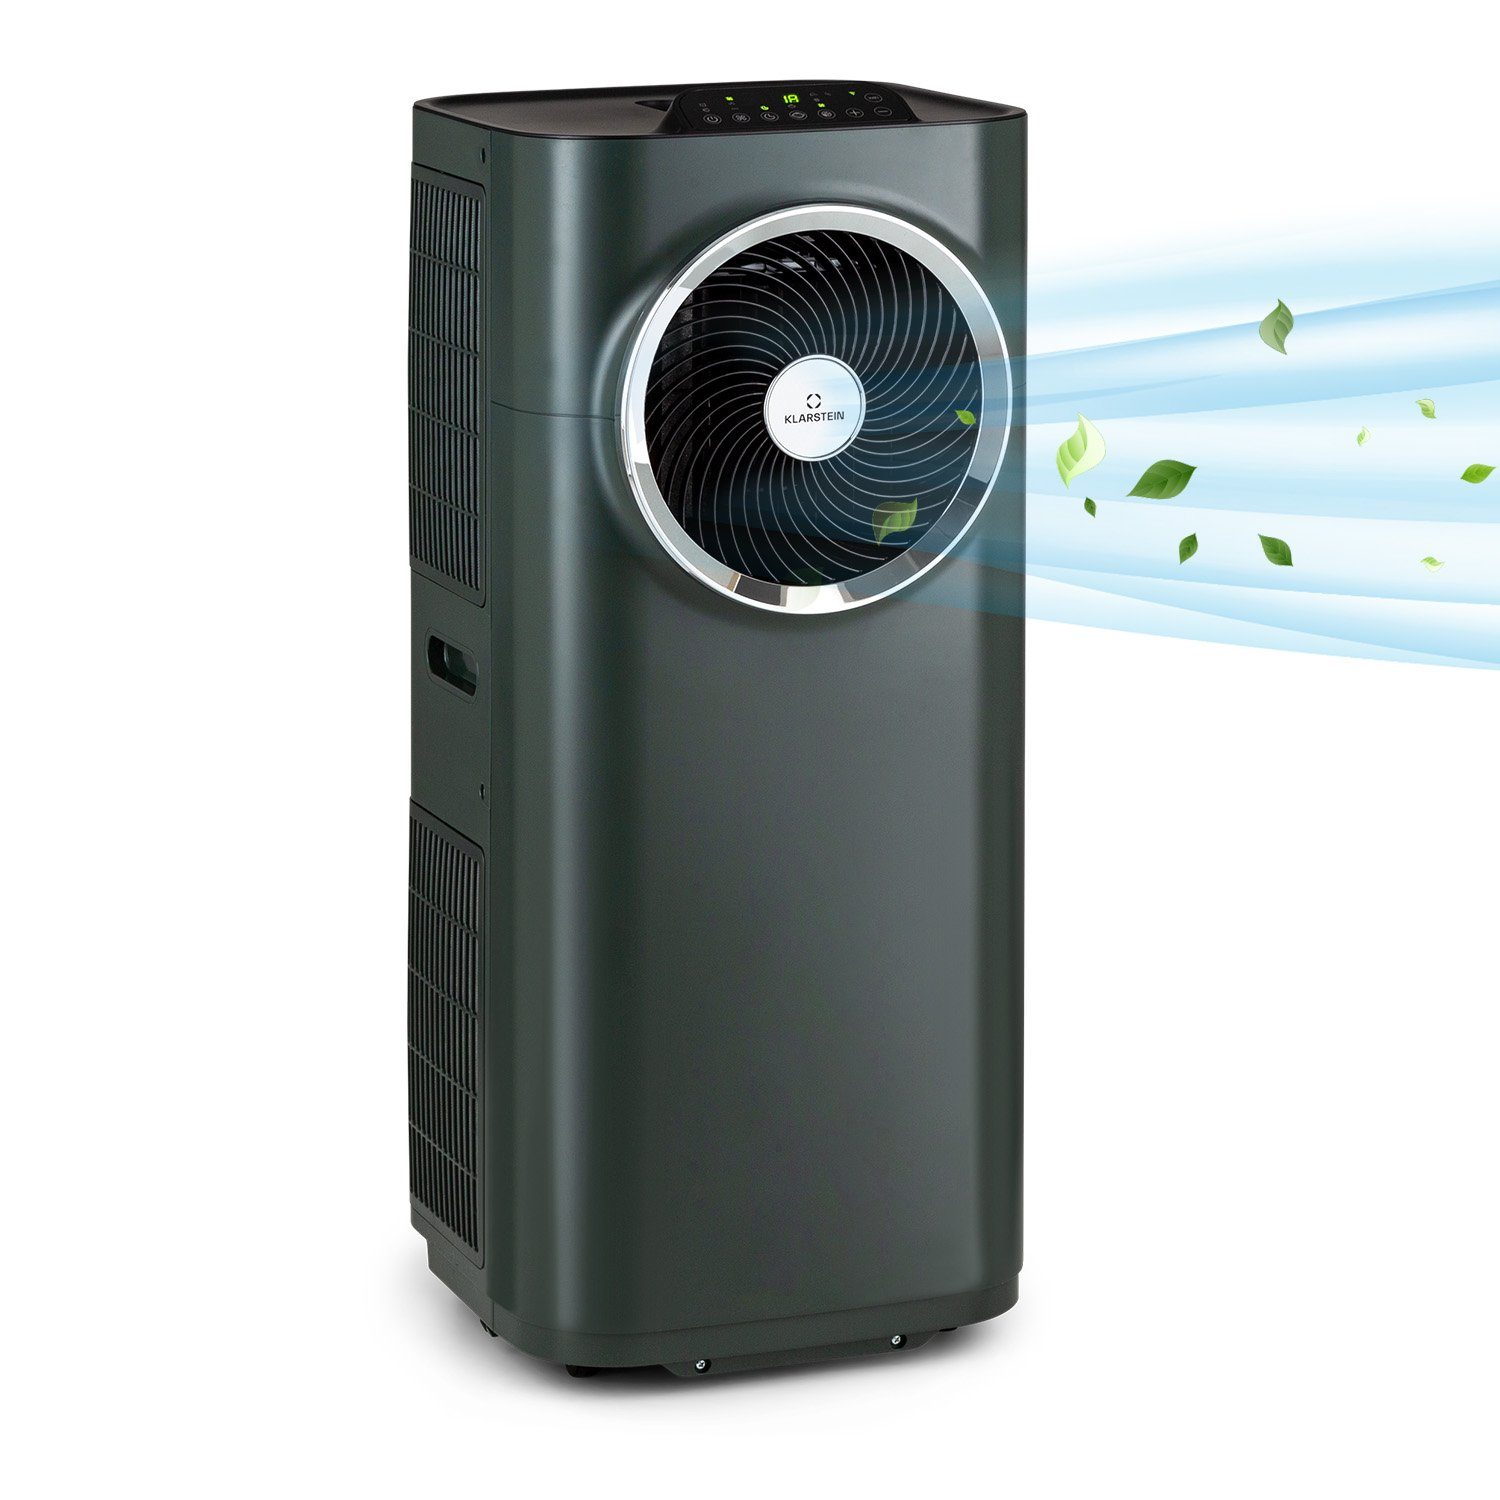 Klarstein Klimagerät Kraftwerk Eco Smart 11, Klimagerät mobil klimaanlage Air Conditioner Kühlgerät Luftkühler